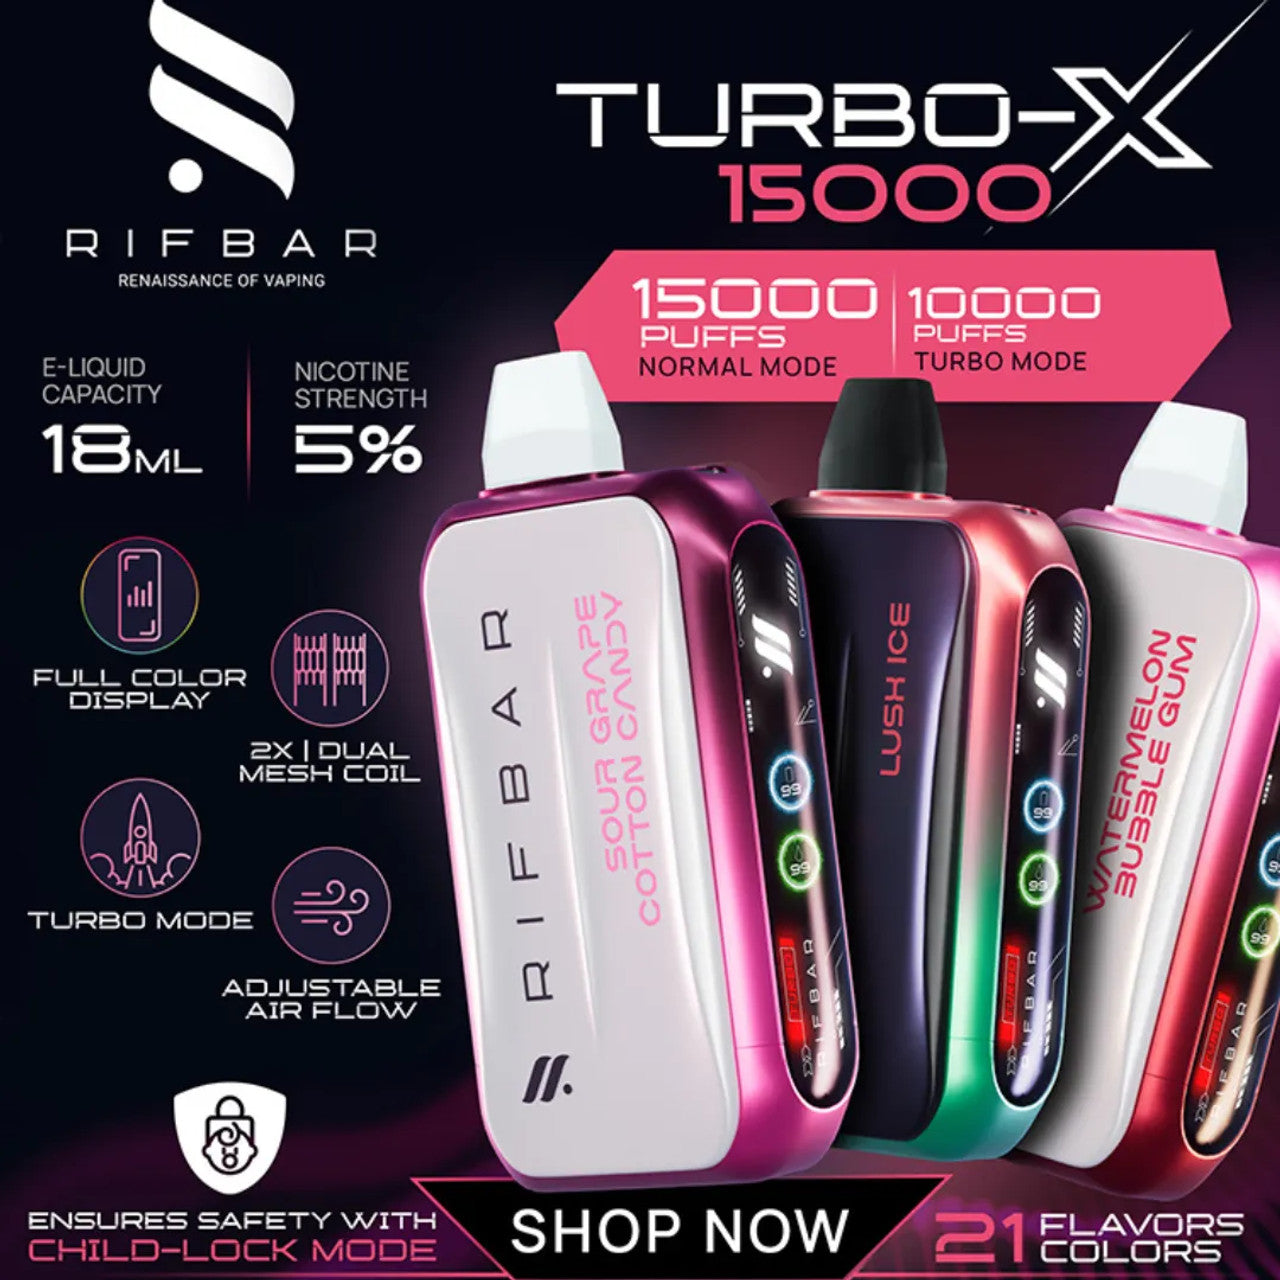 Rifbar Turbo X - 15,000 Hits